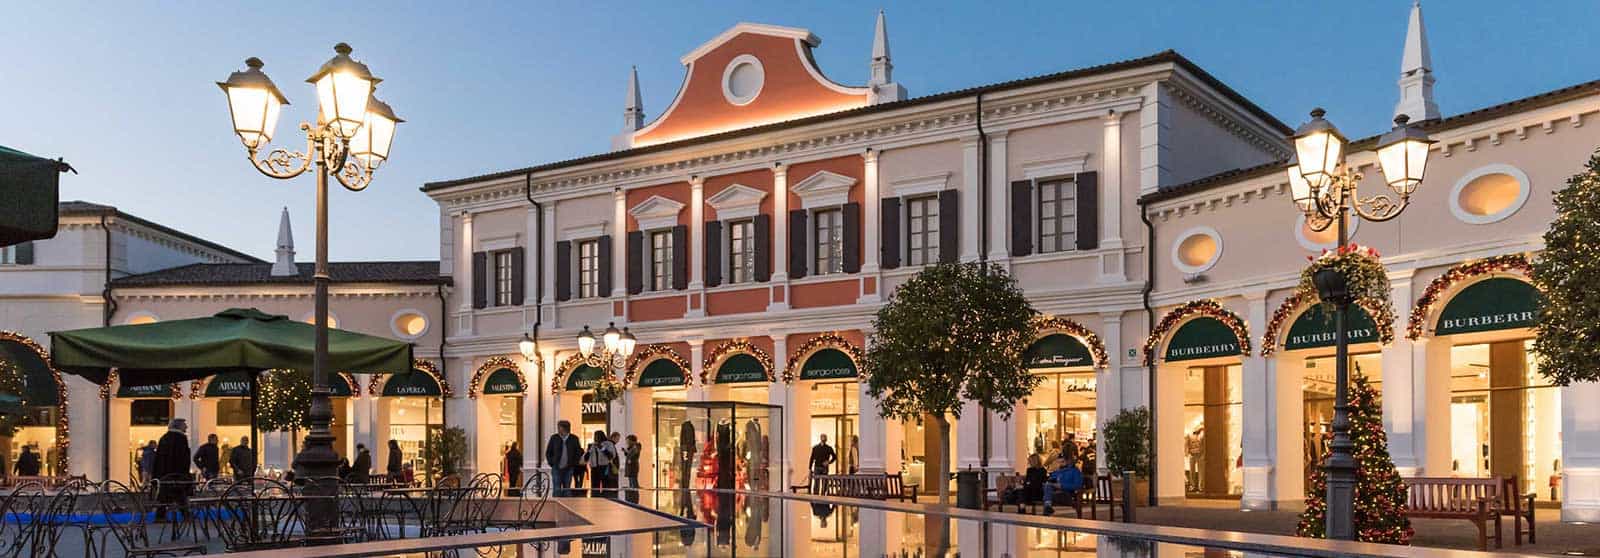 Noventa di Piave Designer Outlet  une expérience de shopping mémorable en  Vénétie